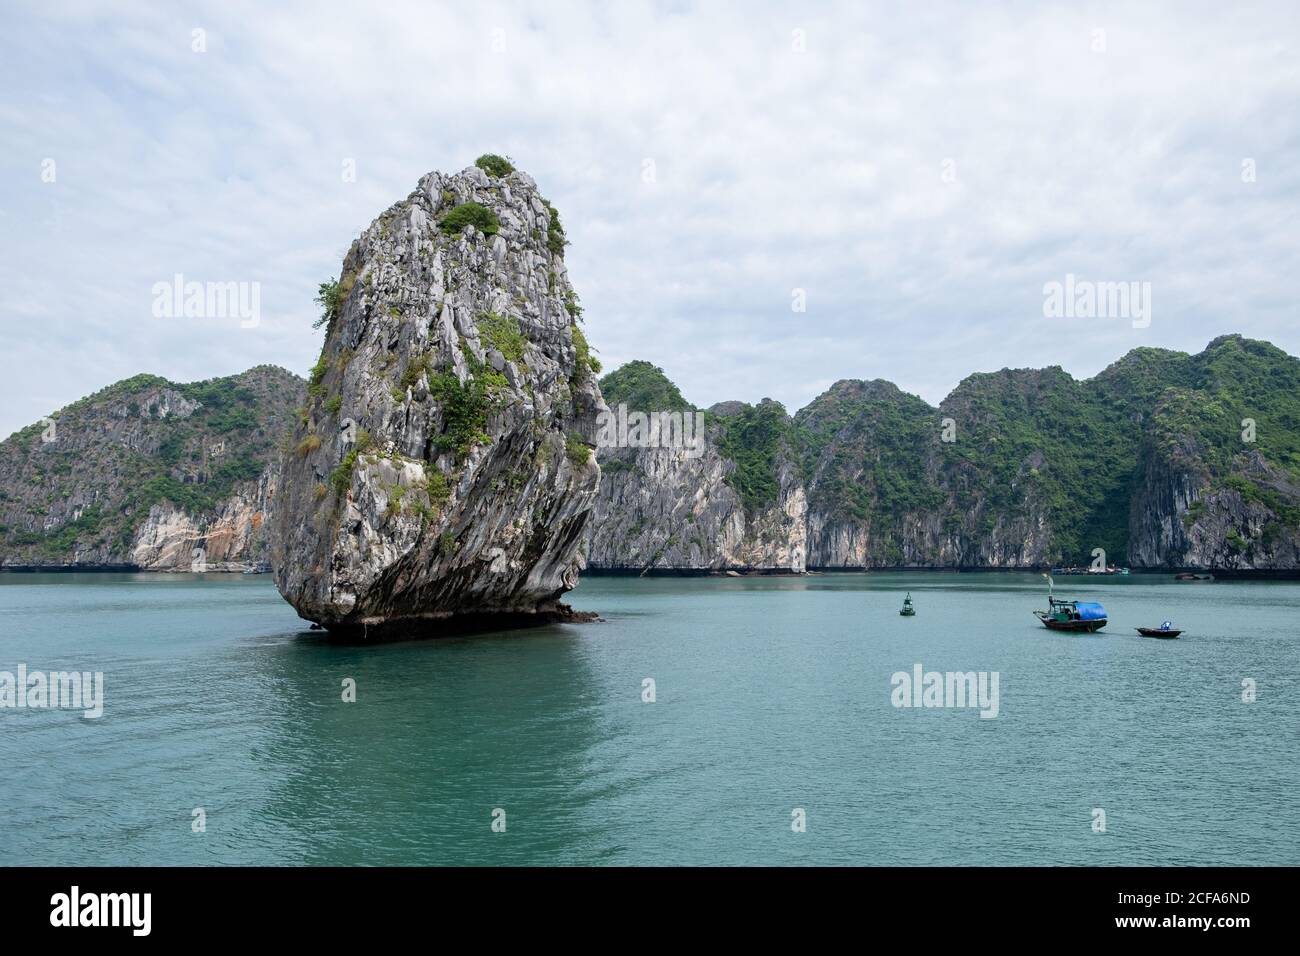 Paysage magique de roche de solitude et de bateaux au milieu de Baie d'Halong au Vietnam Banque D'Images